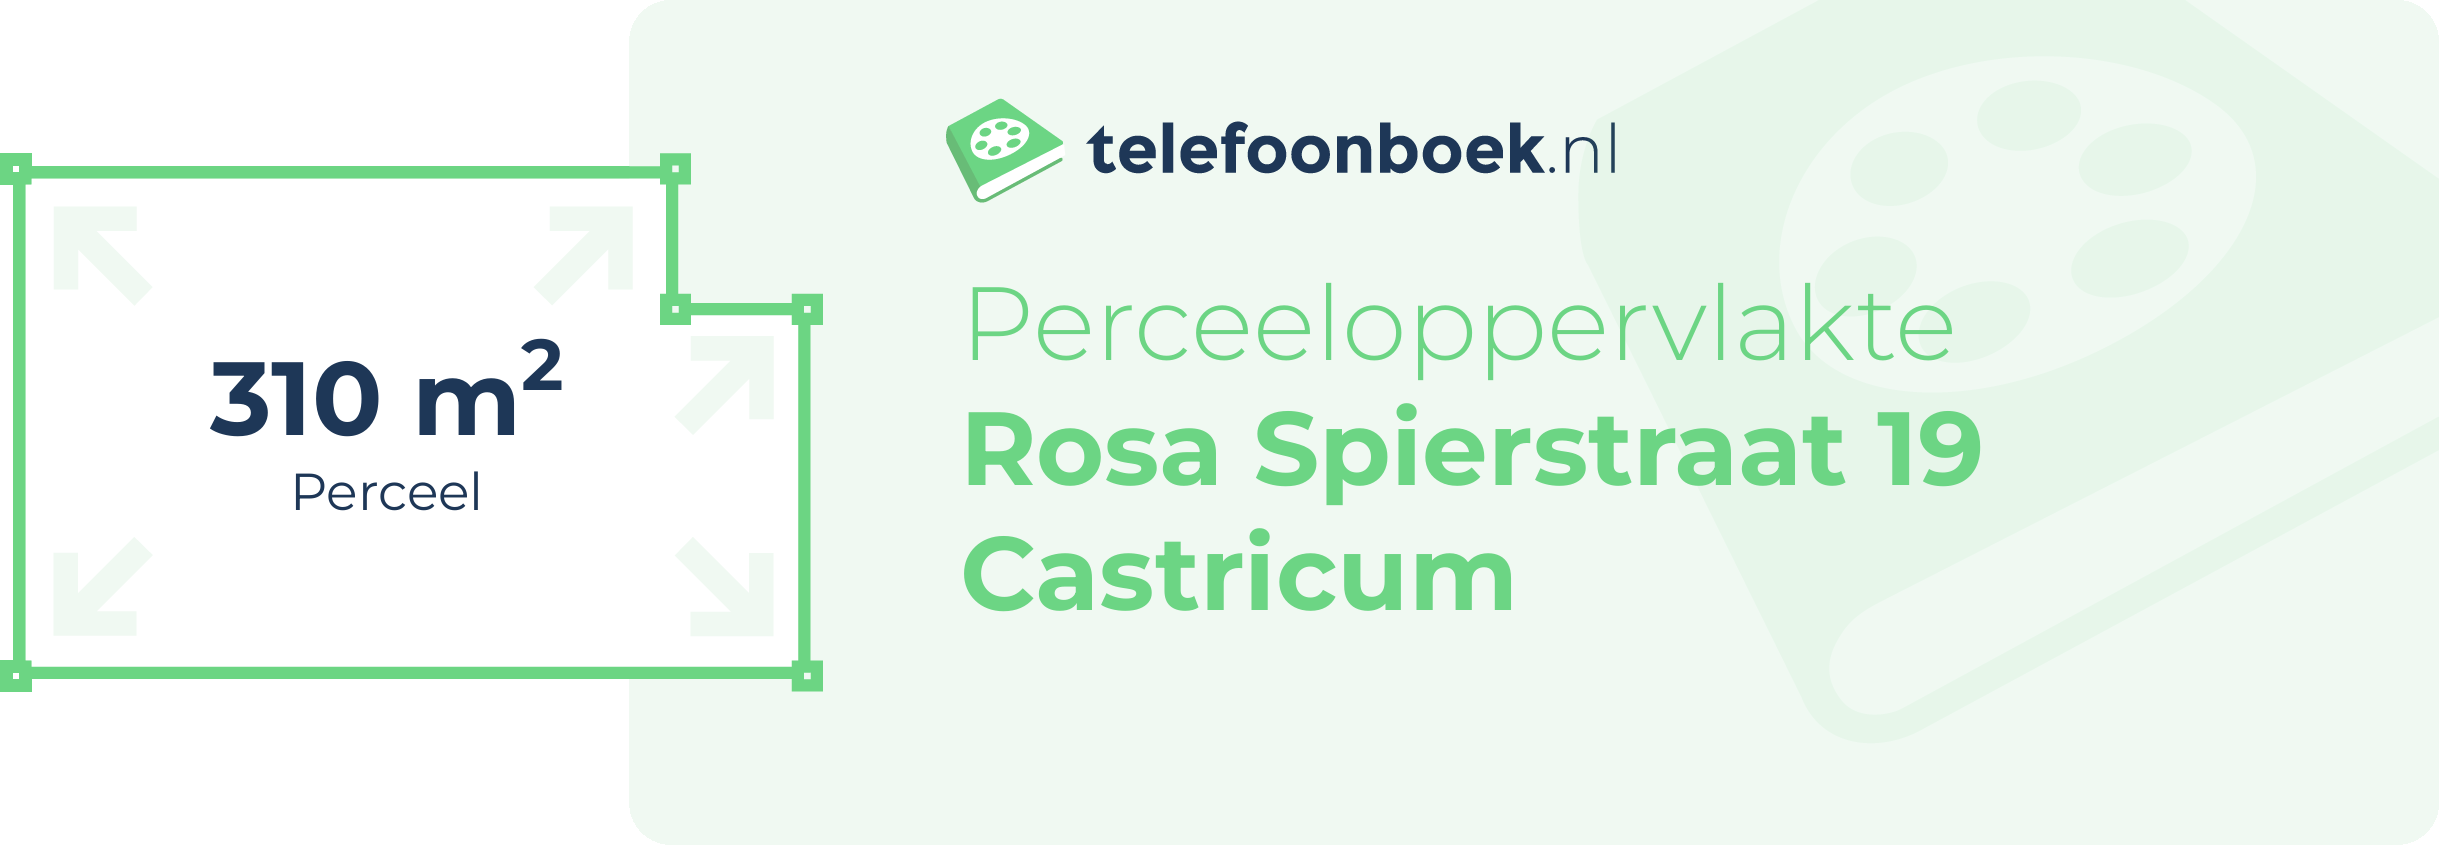 Perceeloppervlakte Rosa Spierstraat 19 Castricum